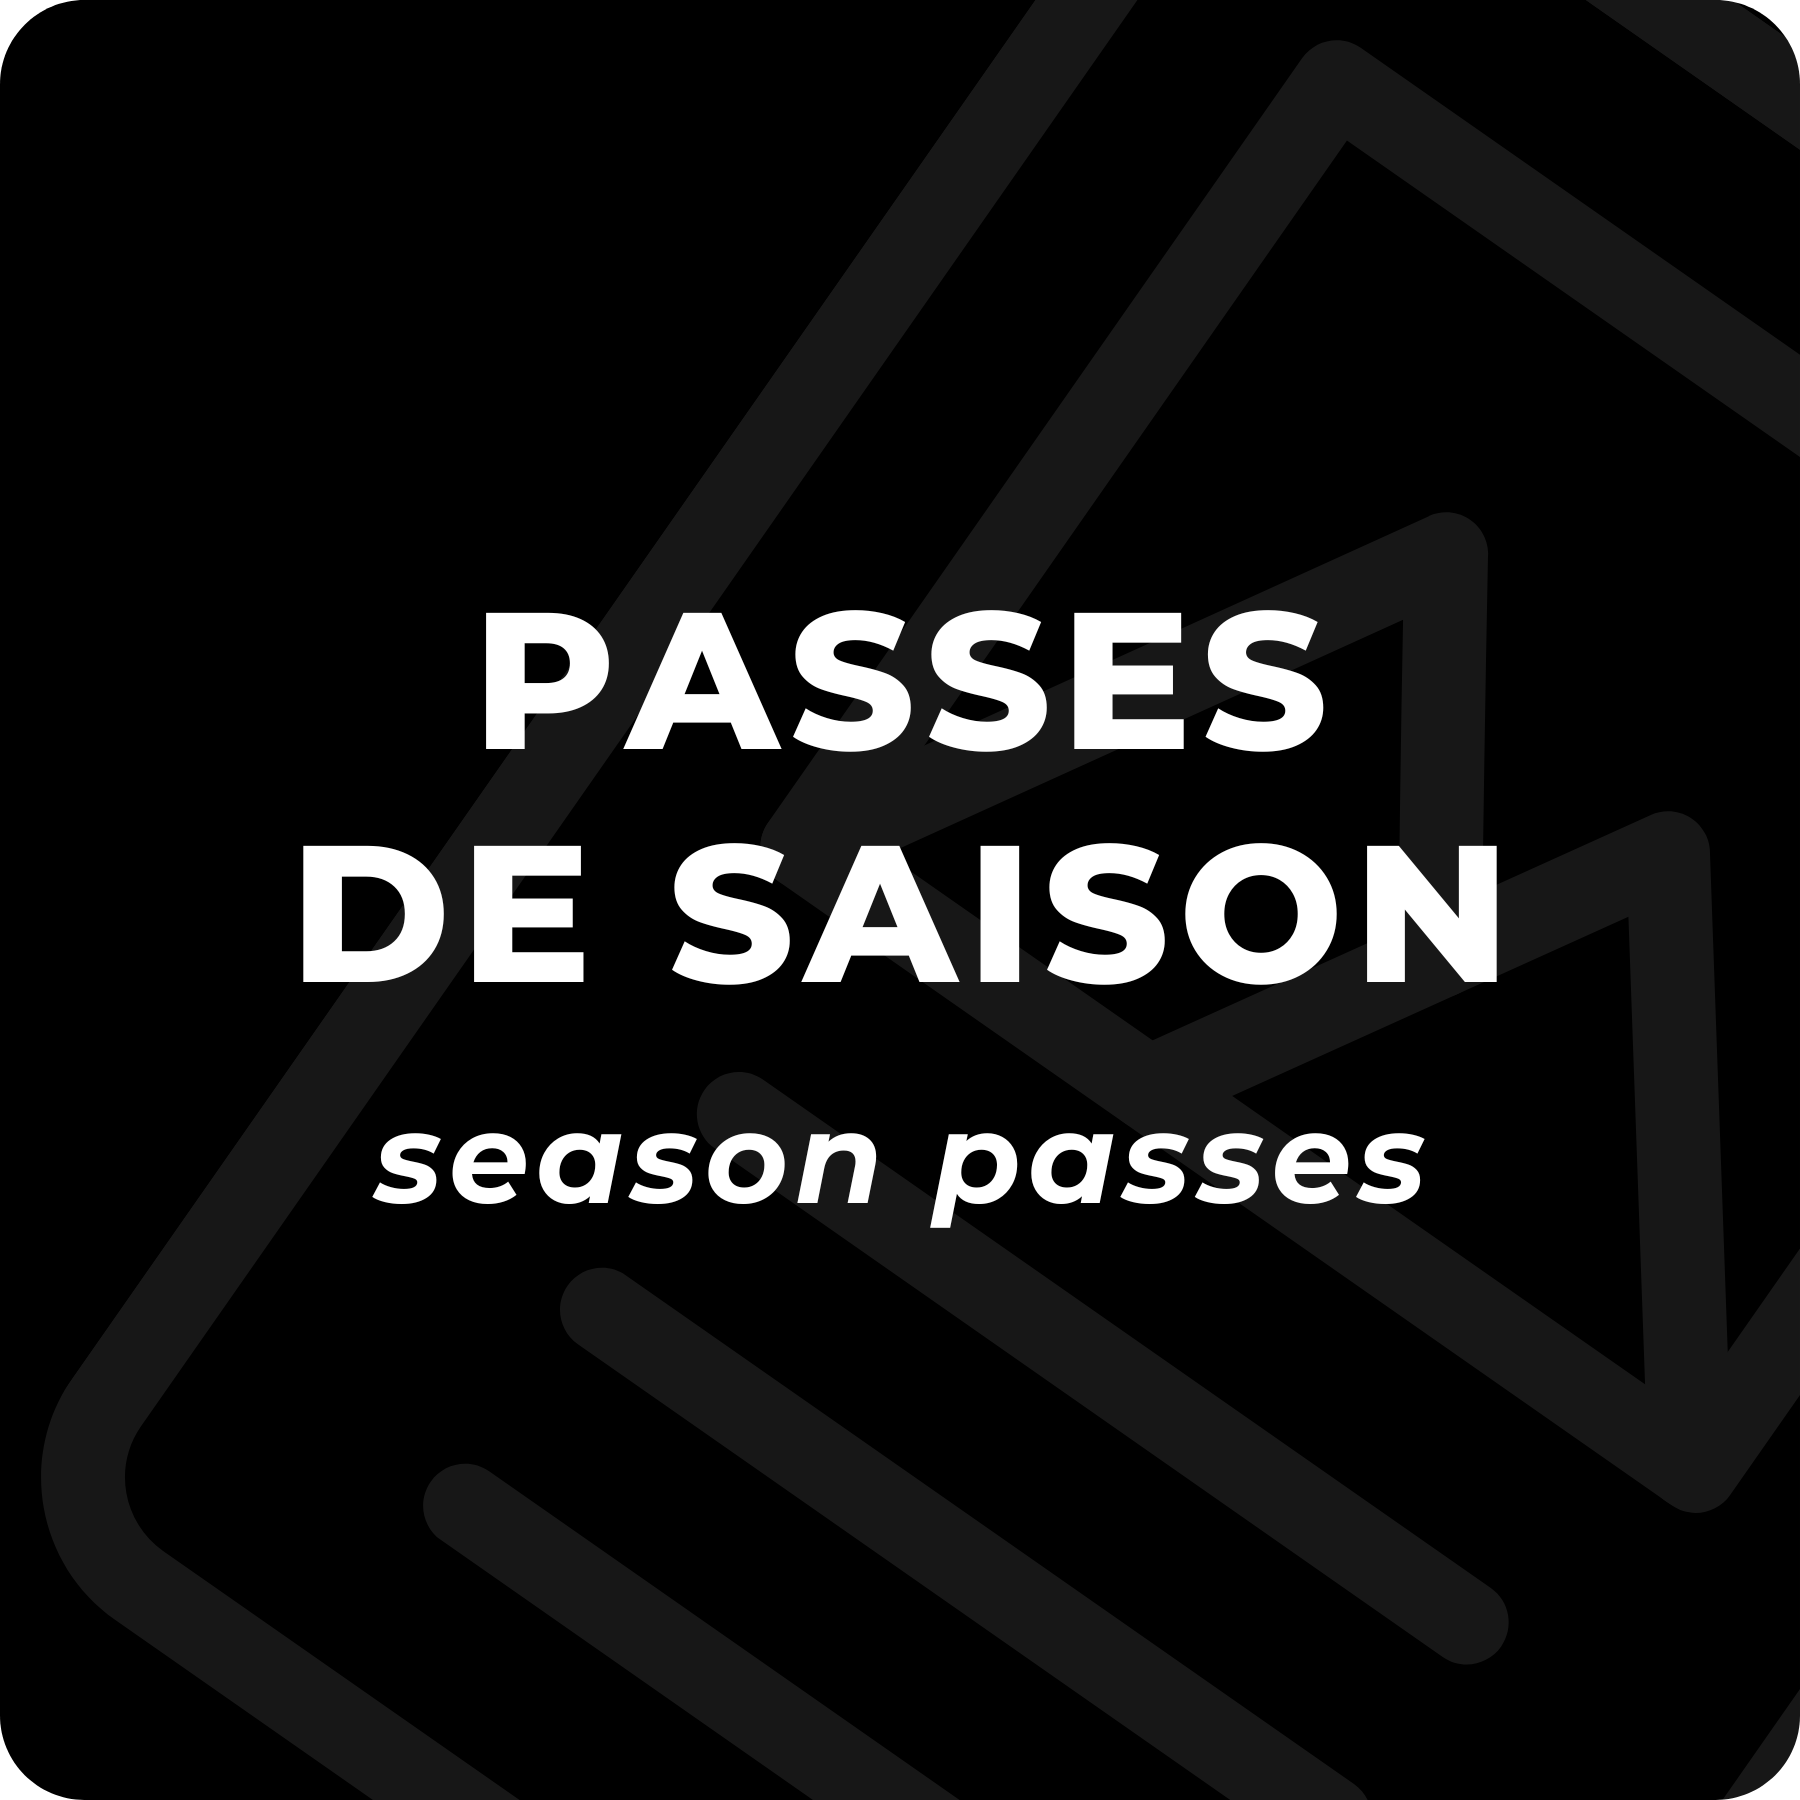 PASSES DE SAISON